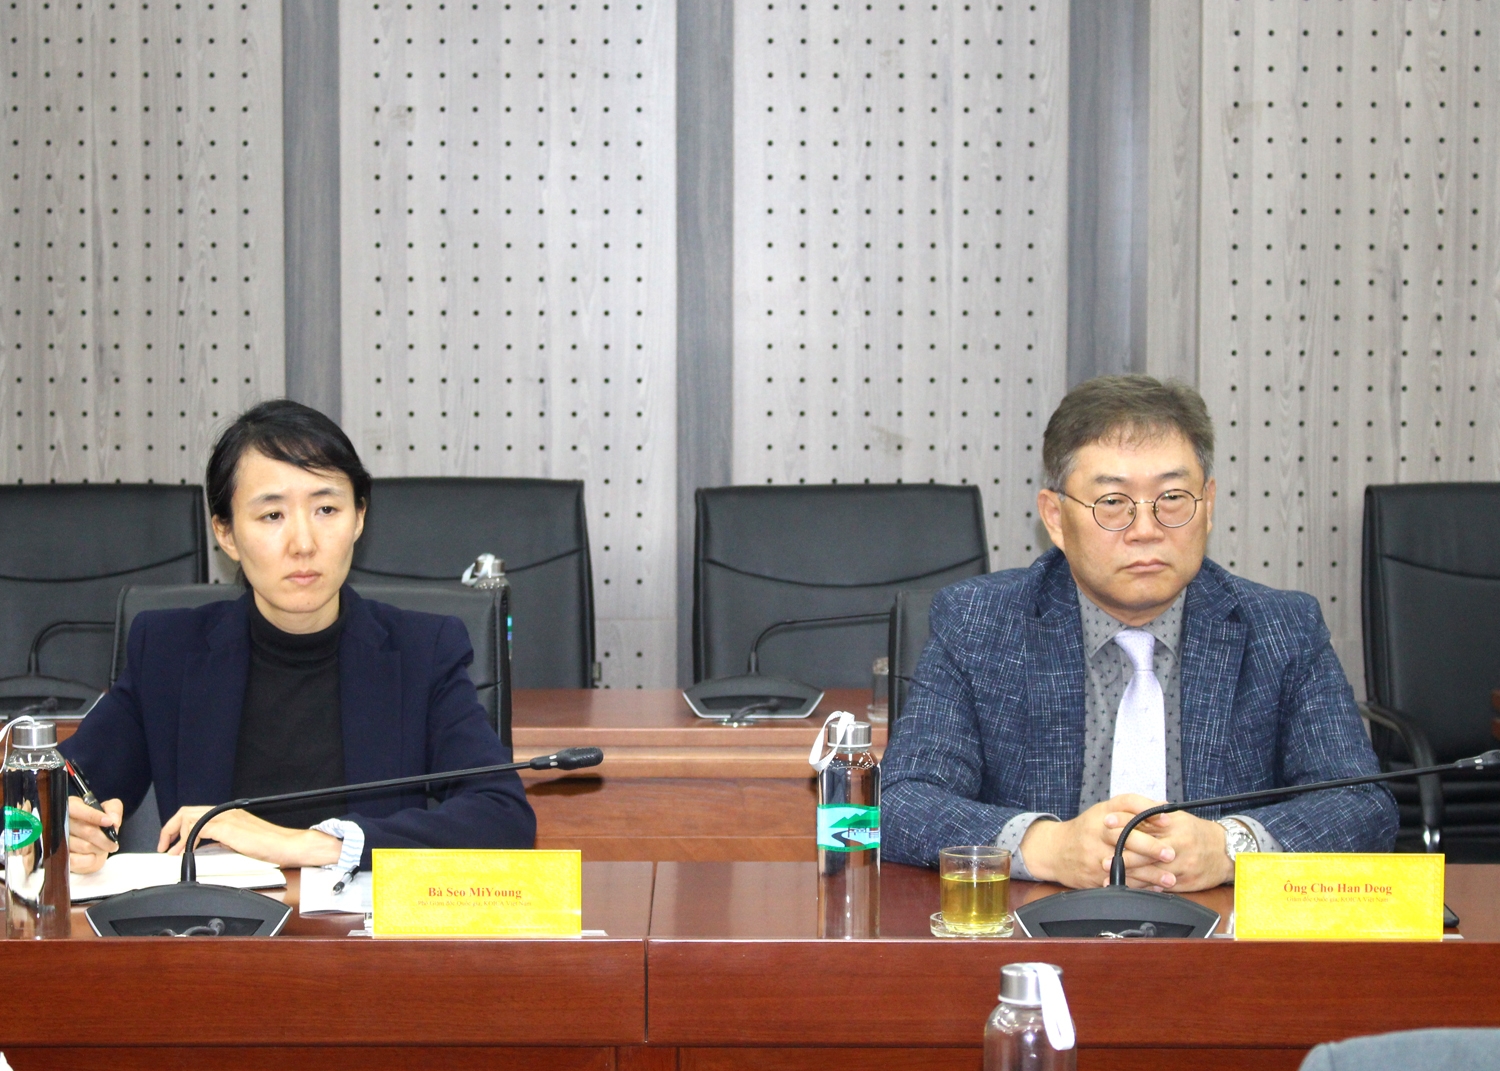 Ông Cho Han Deog - Giám đốc KOICA Việt Nam và bà Seo Miyoung, Phó Giám đốc KOICA Việt Nam tham dự buổi tiếp